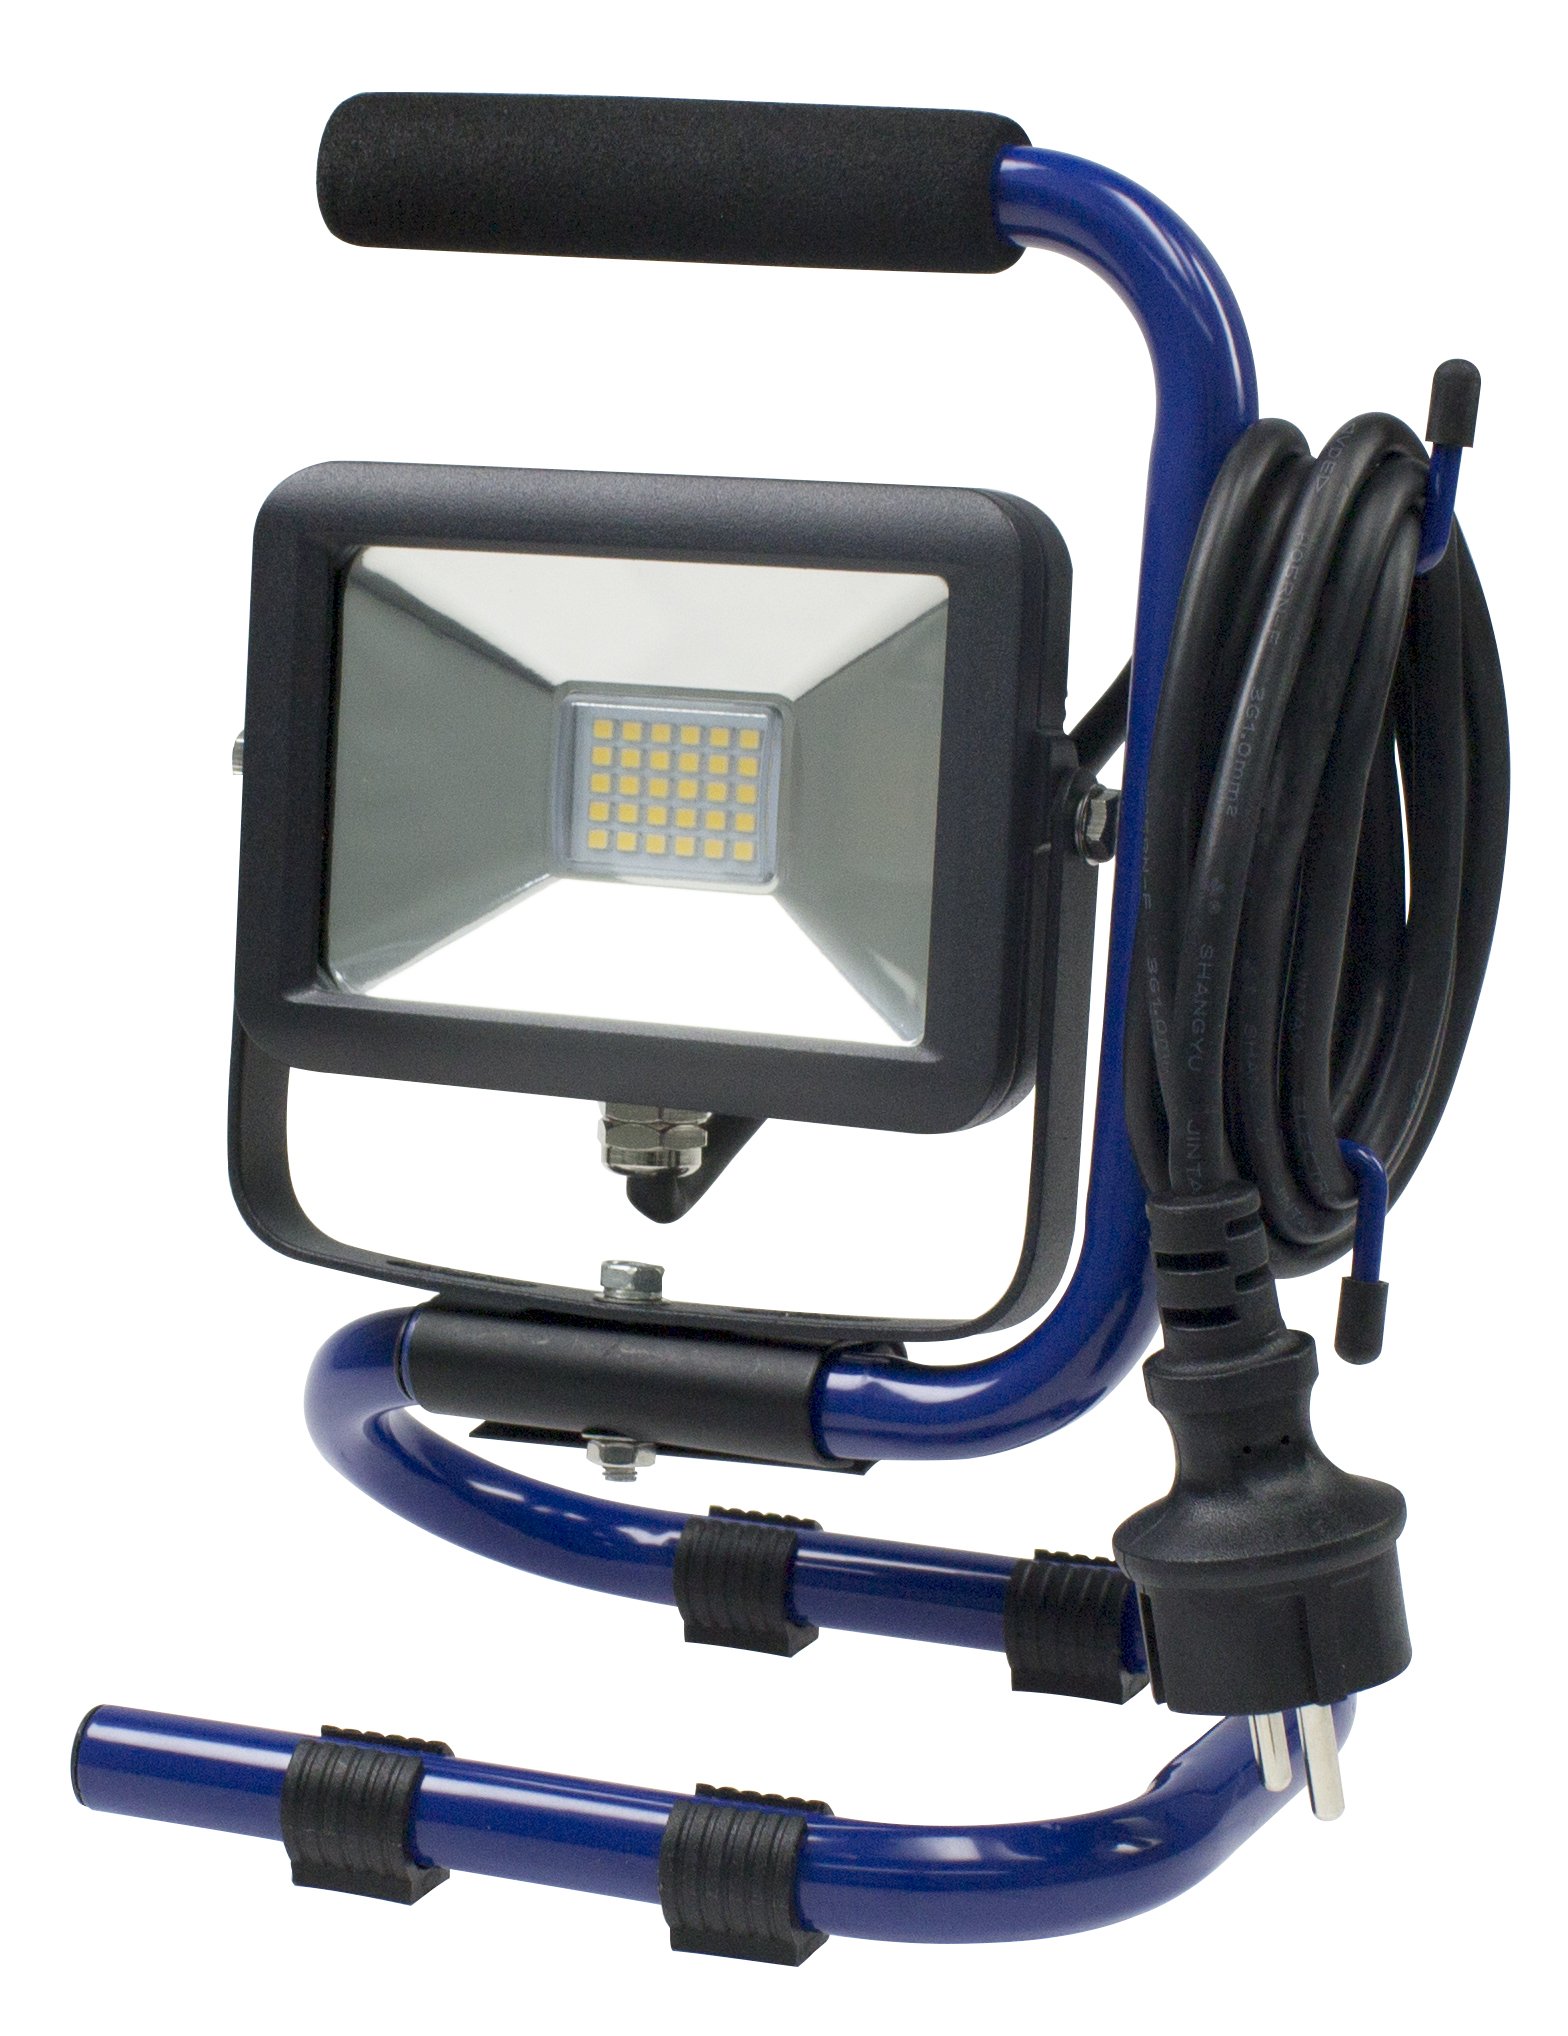 as - Schwabe Mobiler Chip-LED-Strahler 10 W, IP 65 Baustrahler für Aussen und Baustelle, Blau a_plus, 1 Stück, 46410